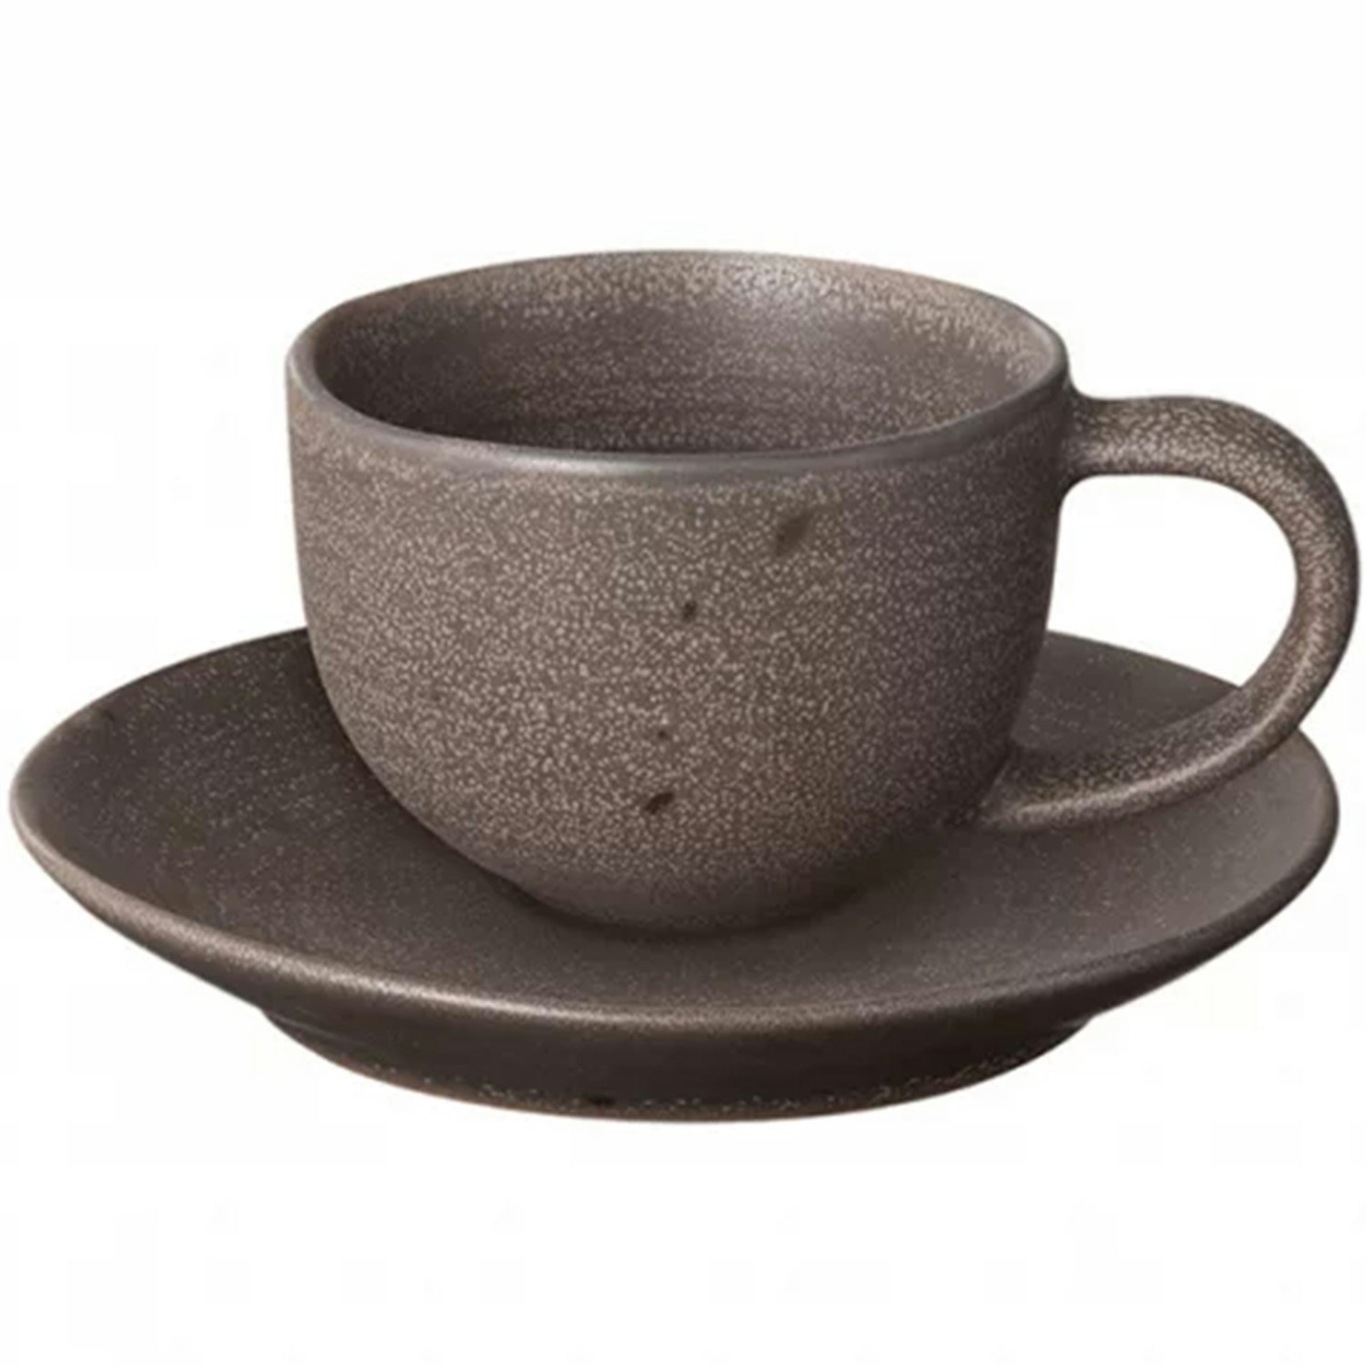 https://royaldesign.com/image/2/blomus-kumi-set-of-2-espresso-cups-60-ml-espresso-0?w=800&quality=80